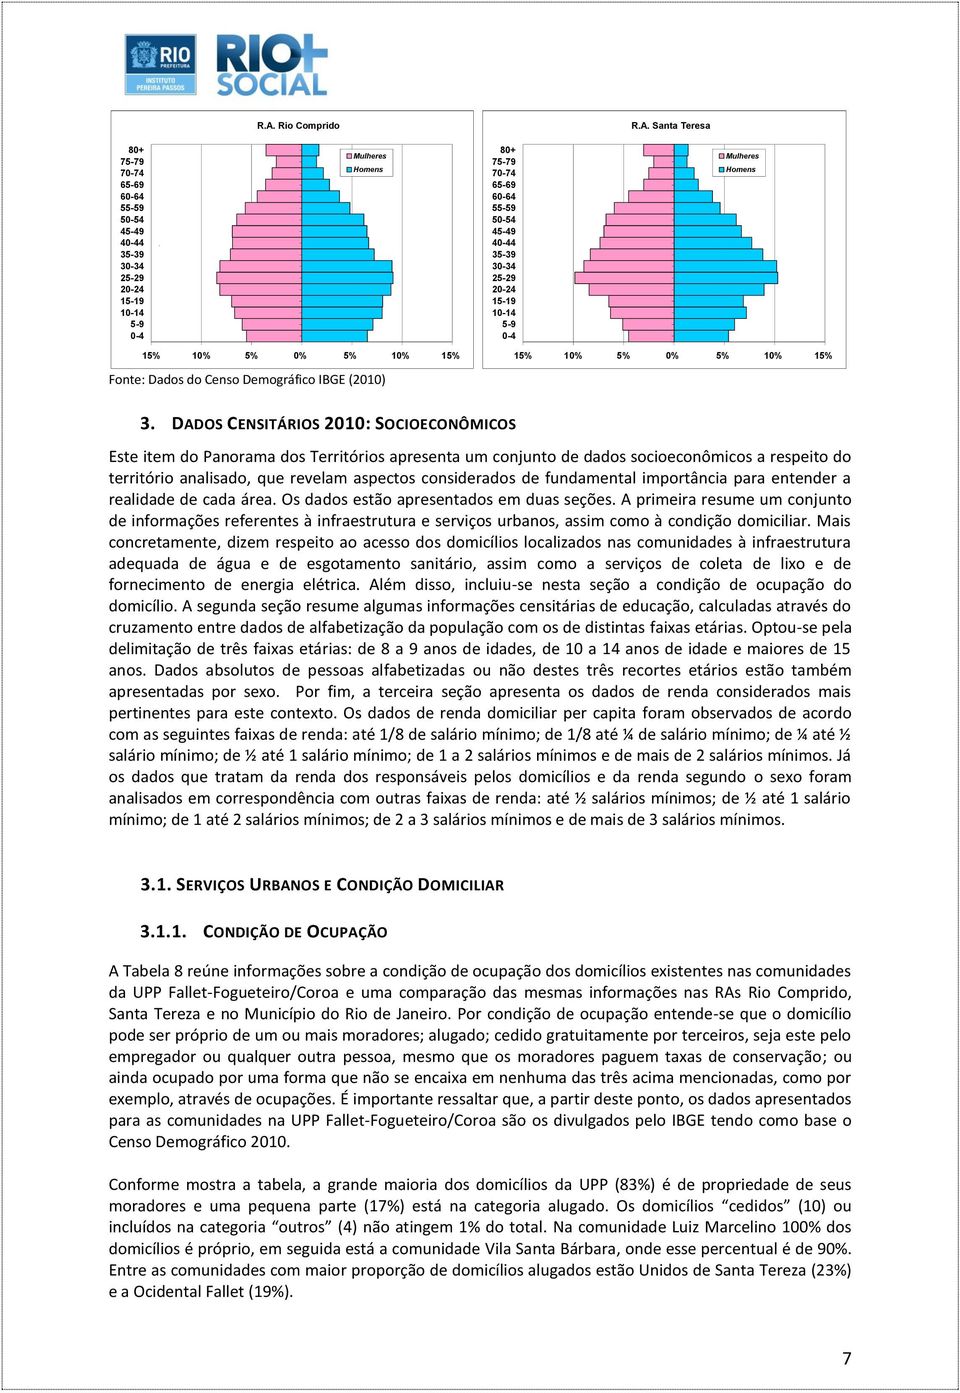 DADOS CENSITÁRIOS 2010: SOCIOECONÔMICOS Este item do Panorama dos Territórios apresenta um conjunto de dados socioeconômicos a respeito do território analisado, que revelam aspectos considerados de